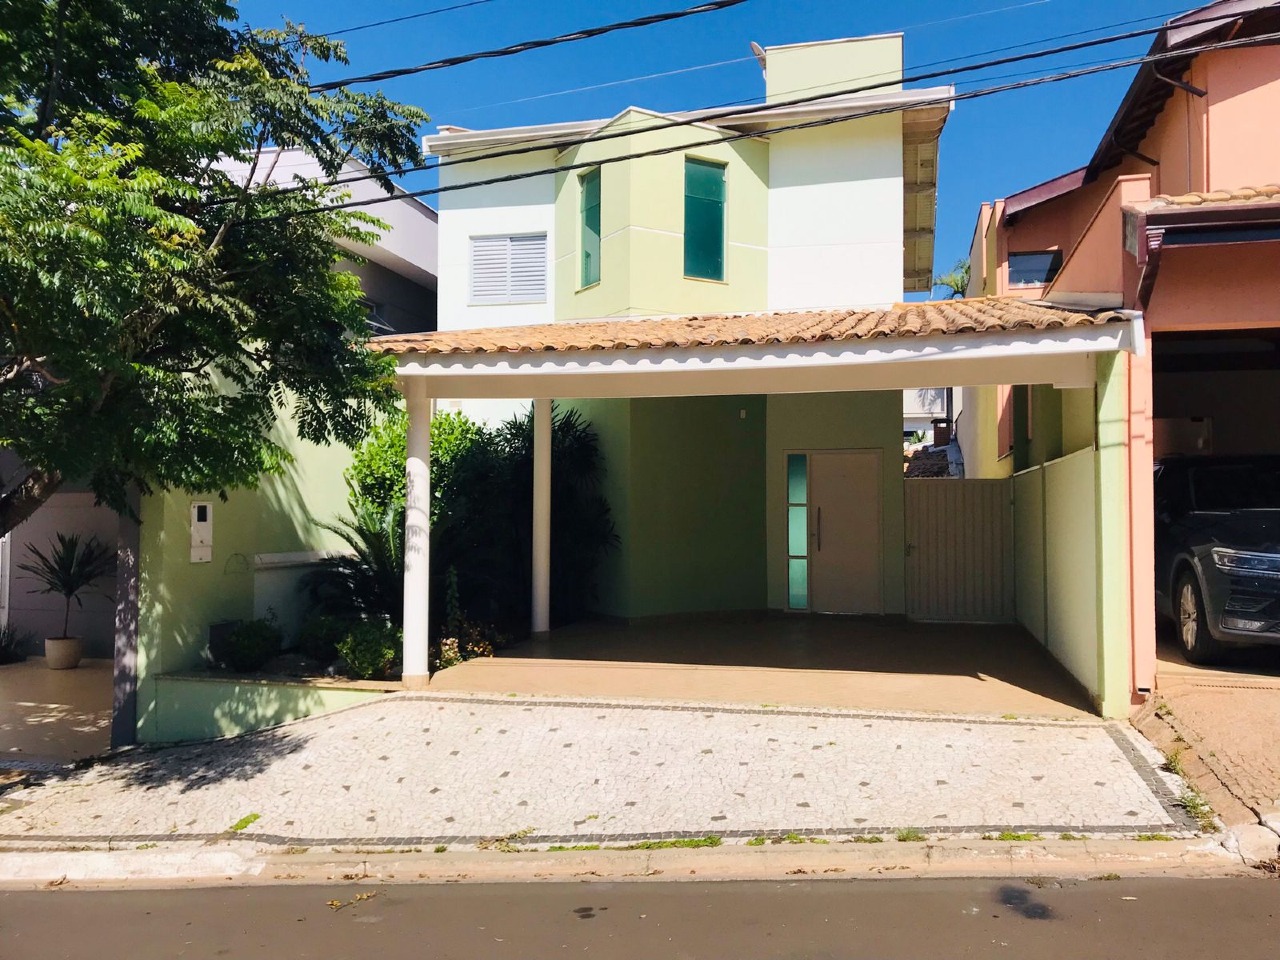 Casa em Condomínio para comprar, 3 quartos, 1 suíte, no bairro Morumbi em Piracicaba - SP